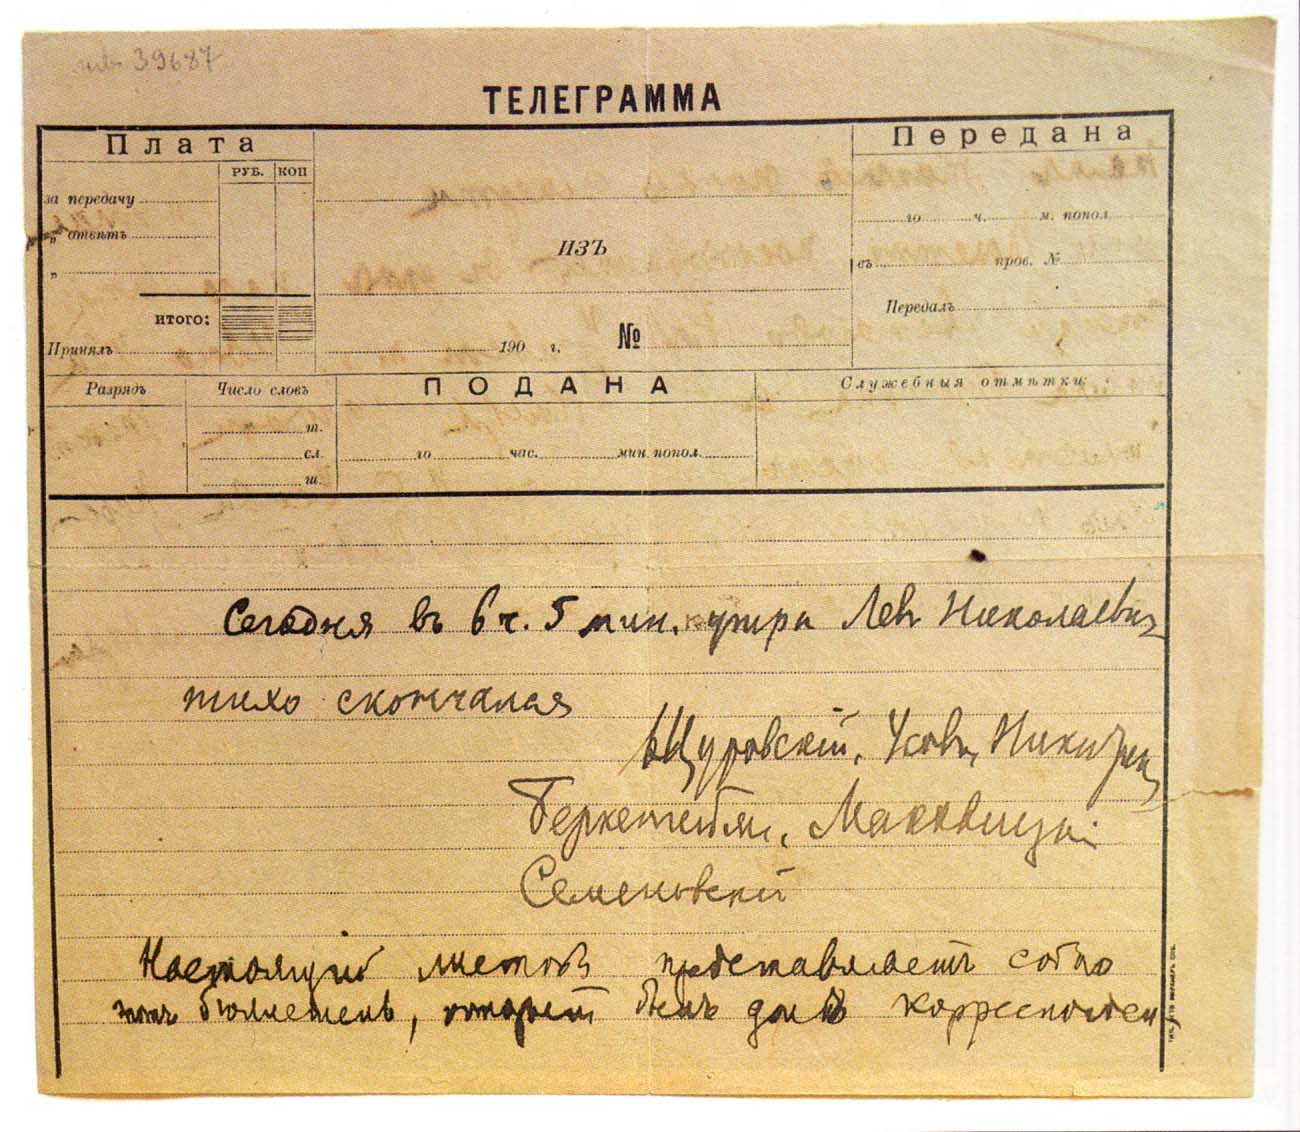 Телеграмма о смерти Л.Н. Толстого, подписанная врачами 7 ноября 1910 г. Астапово.